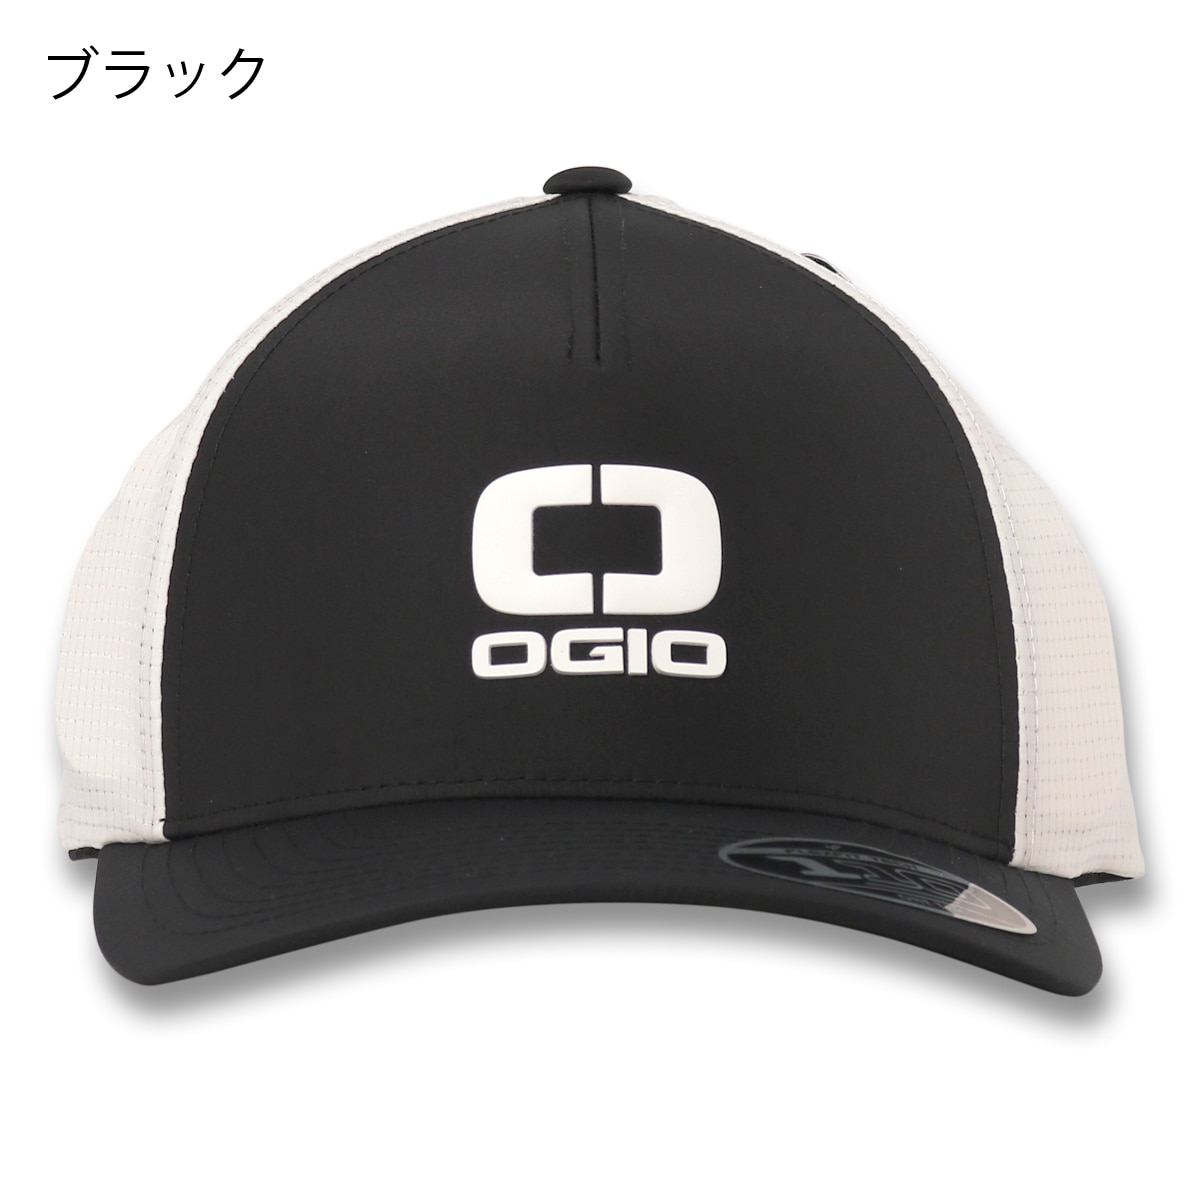 オジオ ゴルフ キャップ メンズ レディース サイズ調整可能 OGIO SHDOW